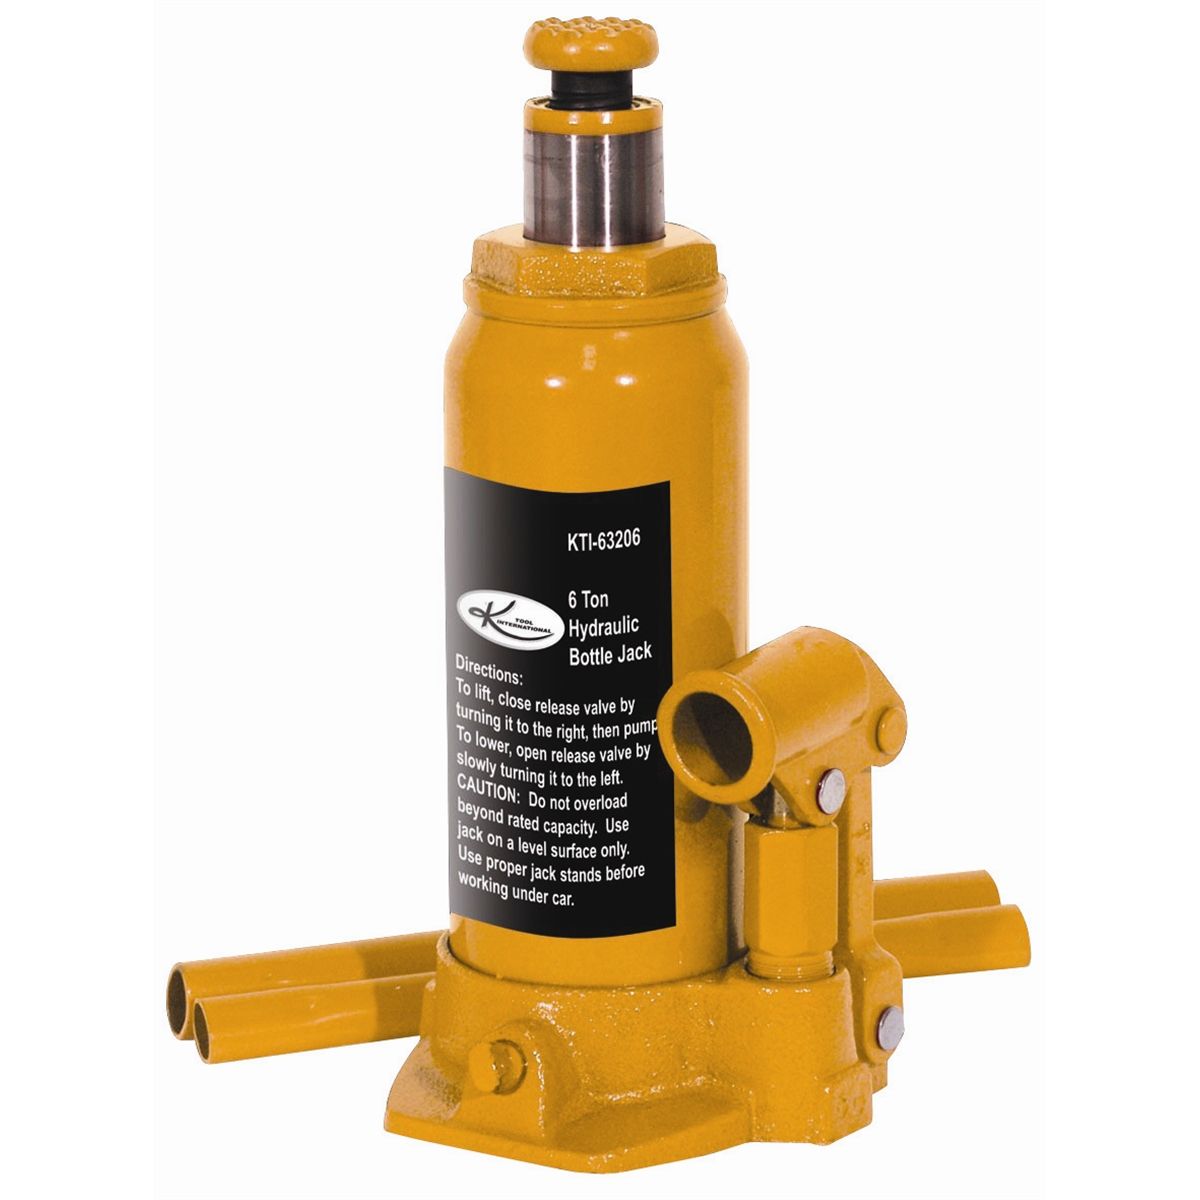 Hydraulic Bottle Jack - 6 Ton Capacity